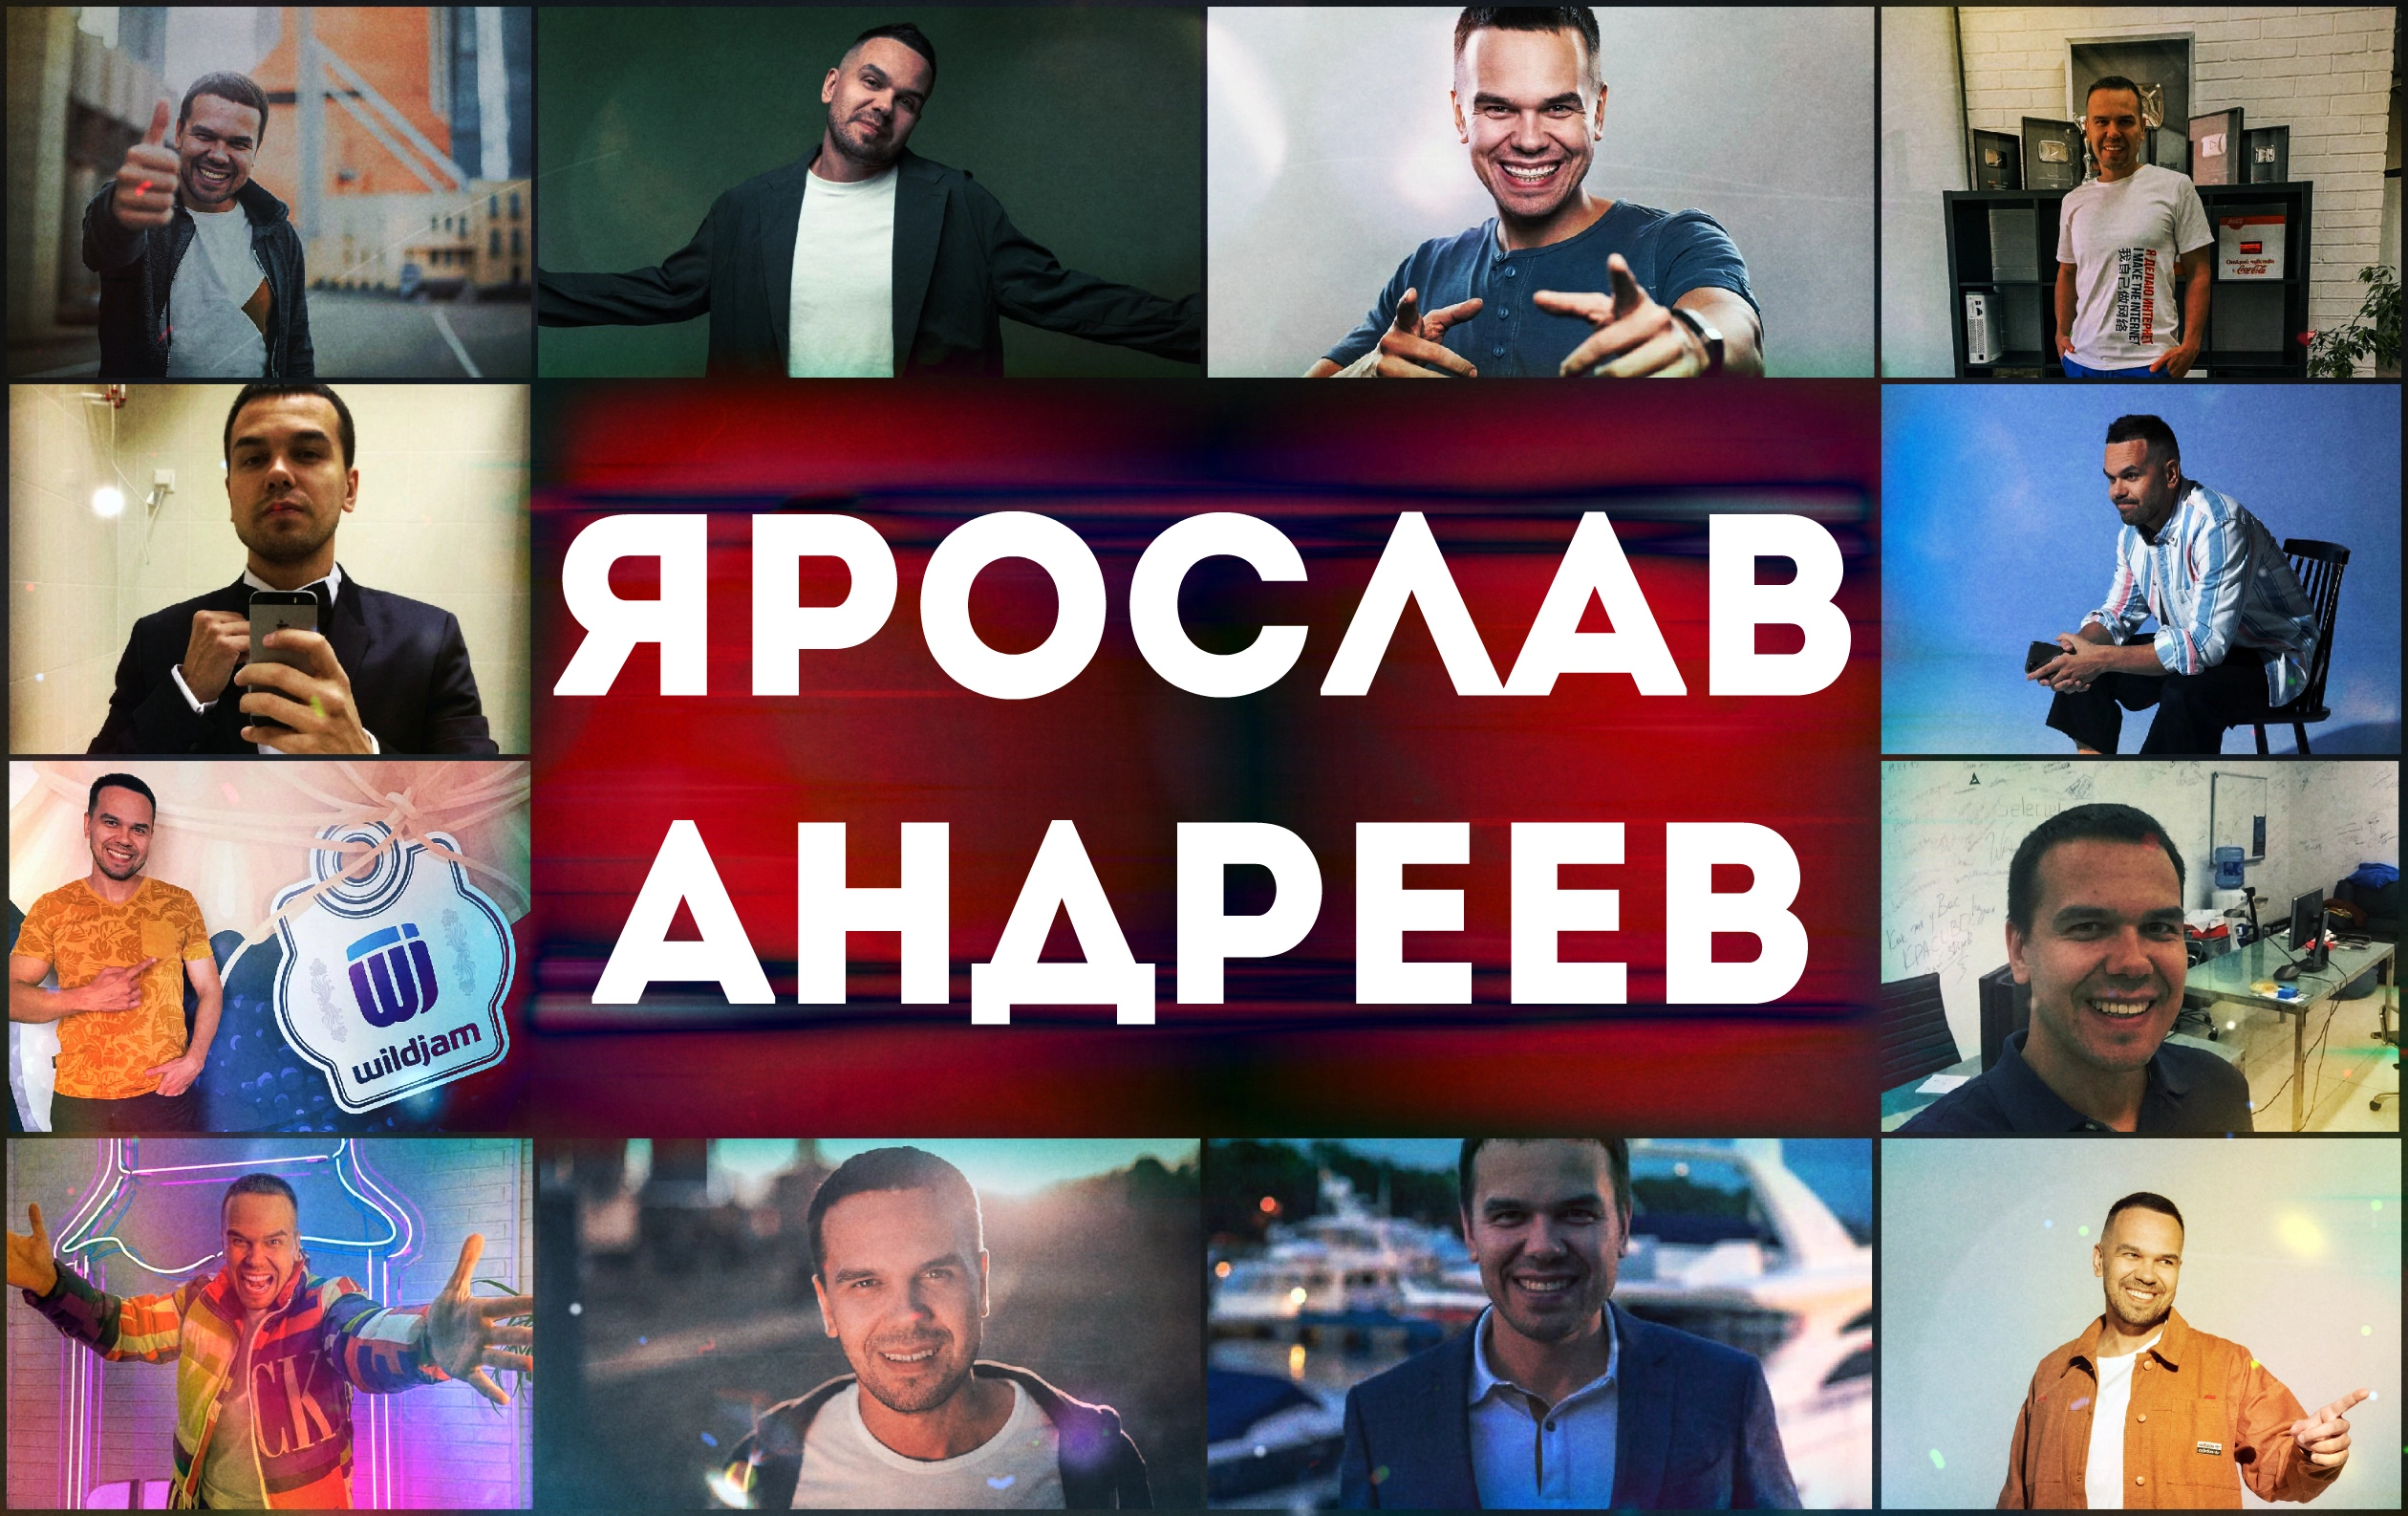 Ярослав Андреев - серийный предприниматель, инвестор и продюсер